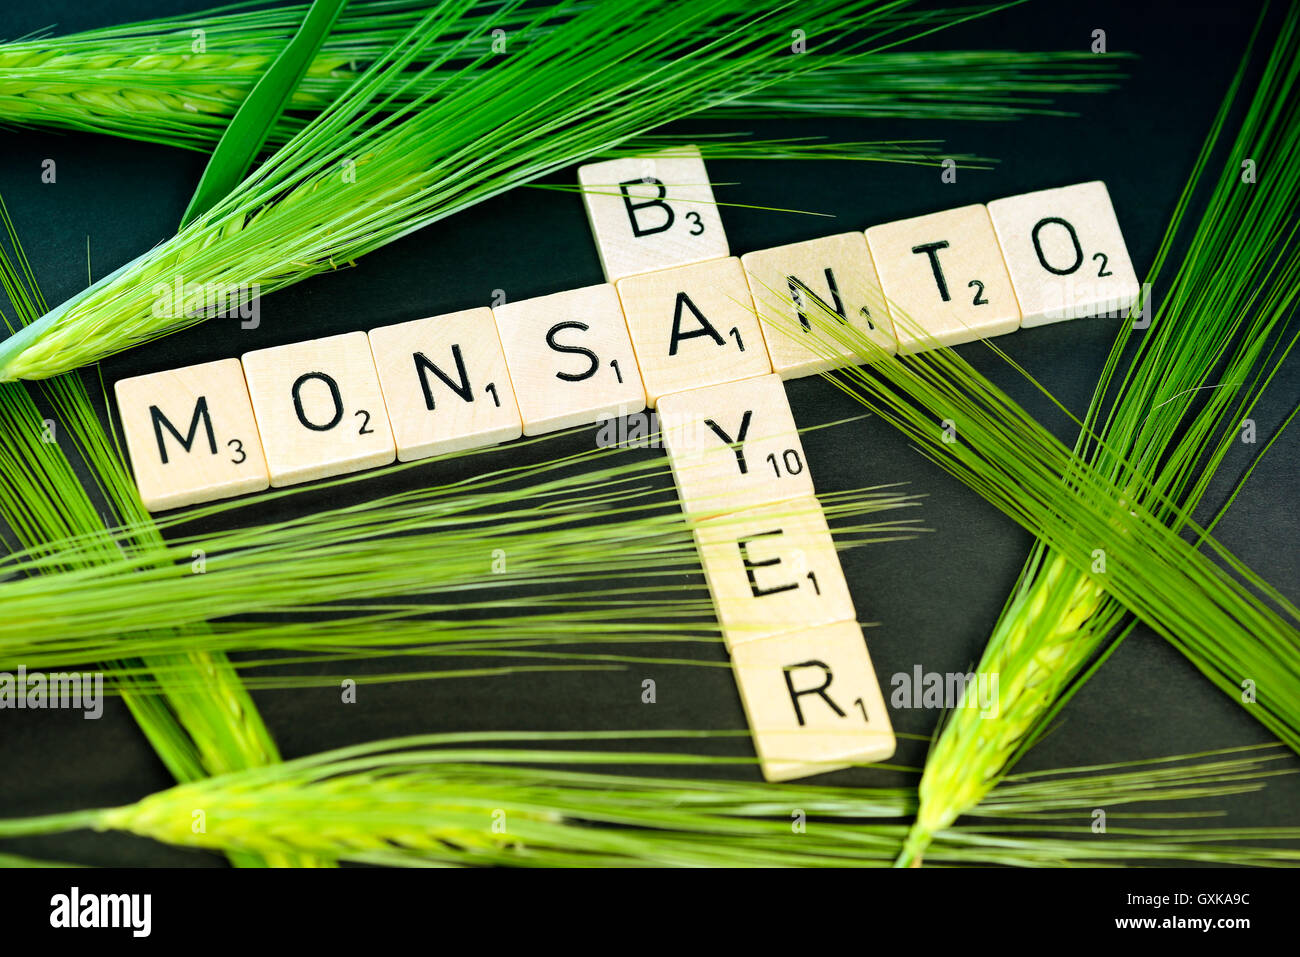 SchriftzÃ¼ge von Bayer und Monsanto mit KornÃ¤hren, Ãœbernahmeangebot von Bayer Stock Photo